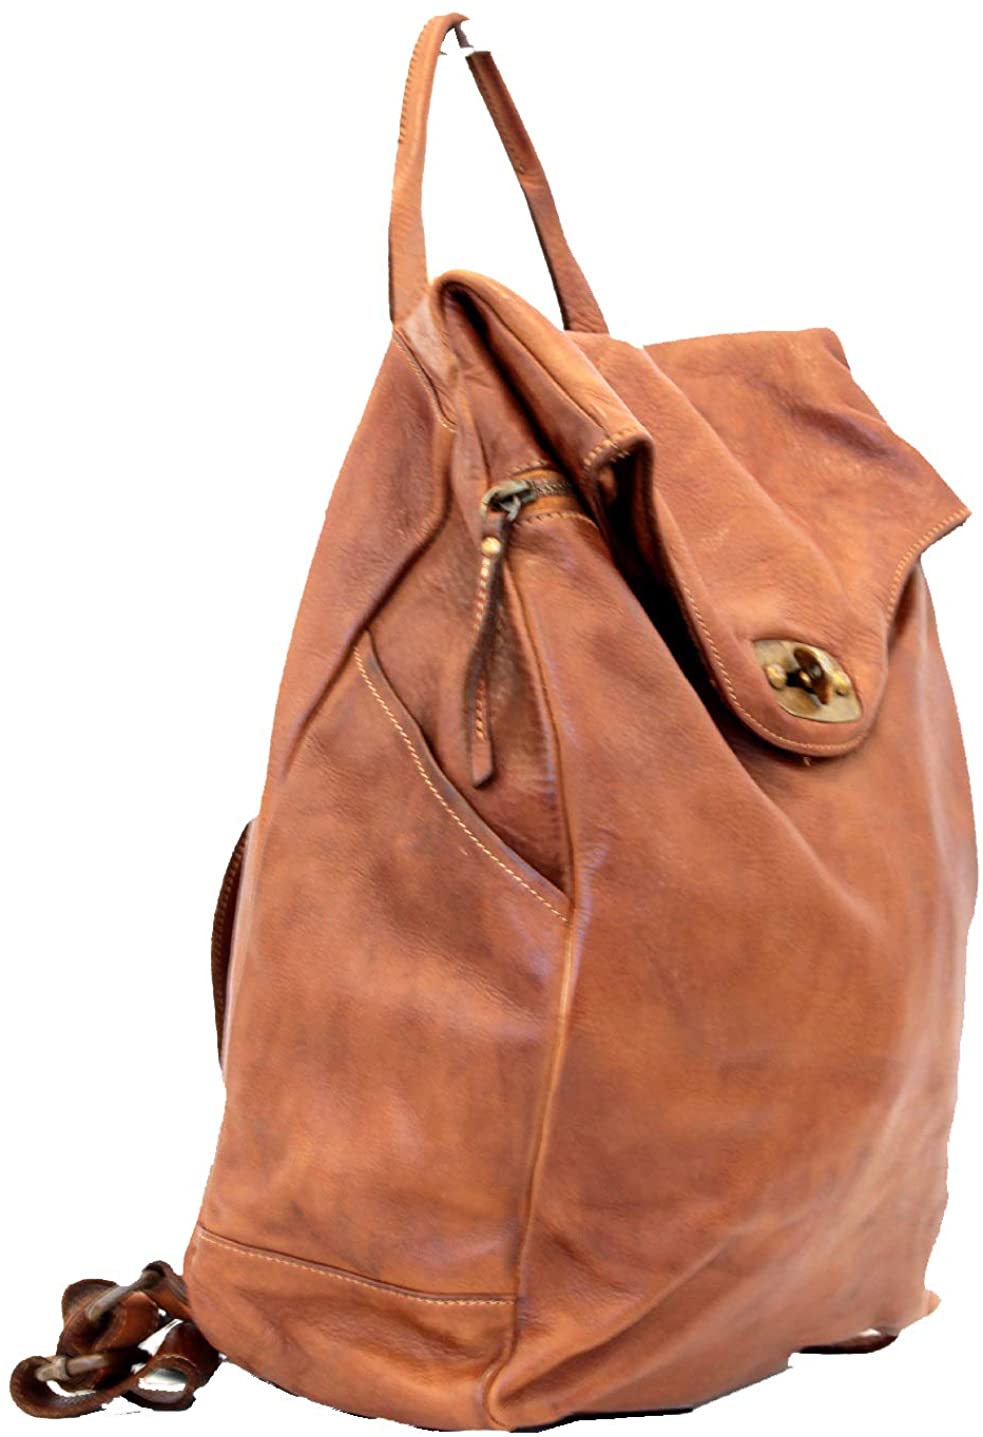 BZNA Bag Rinalto schwarz Italy Rucksack Backpacker Designer Tasche Handtasche Schultertasche Leder Damen Neu